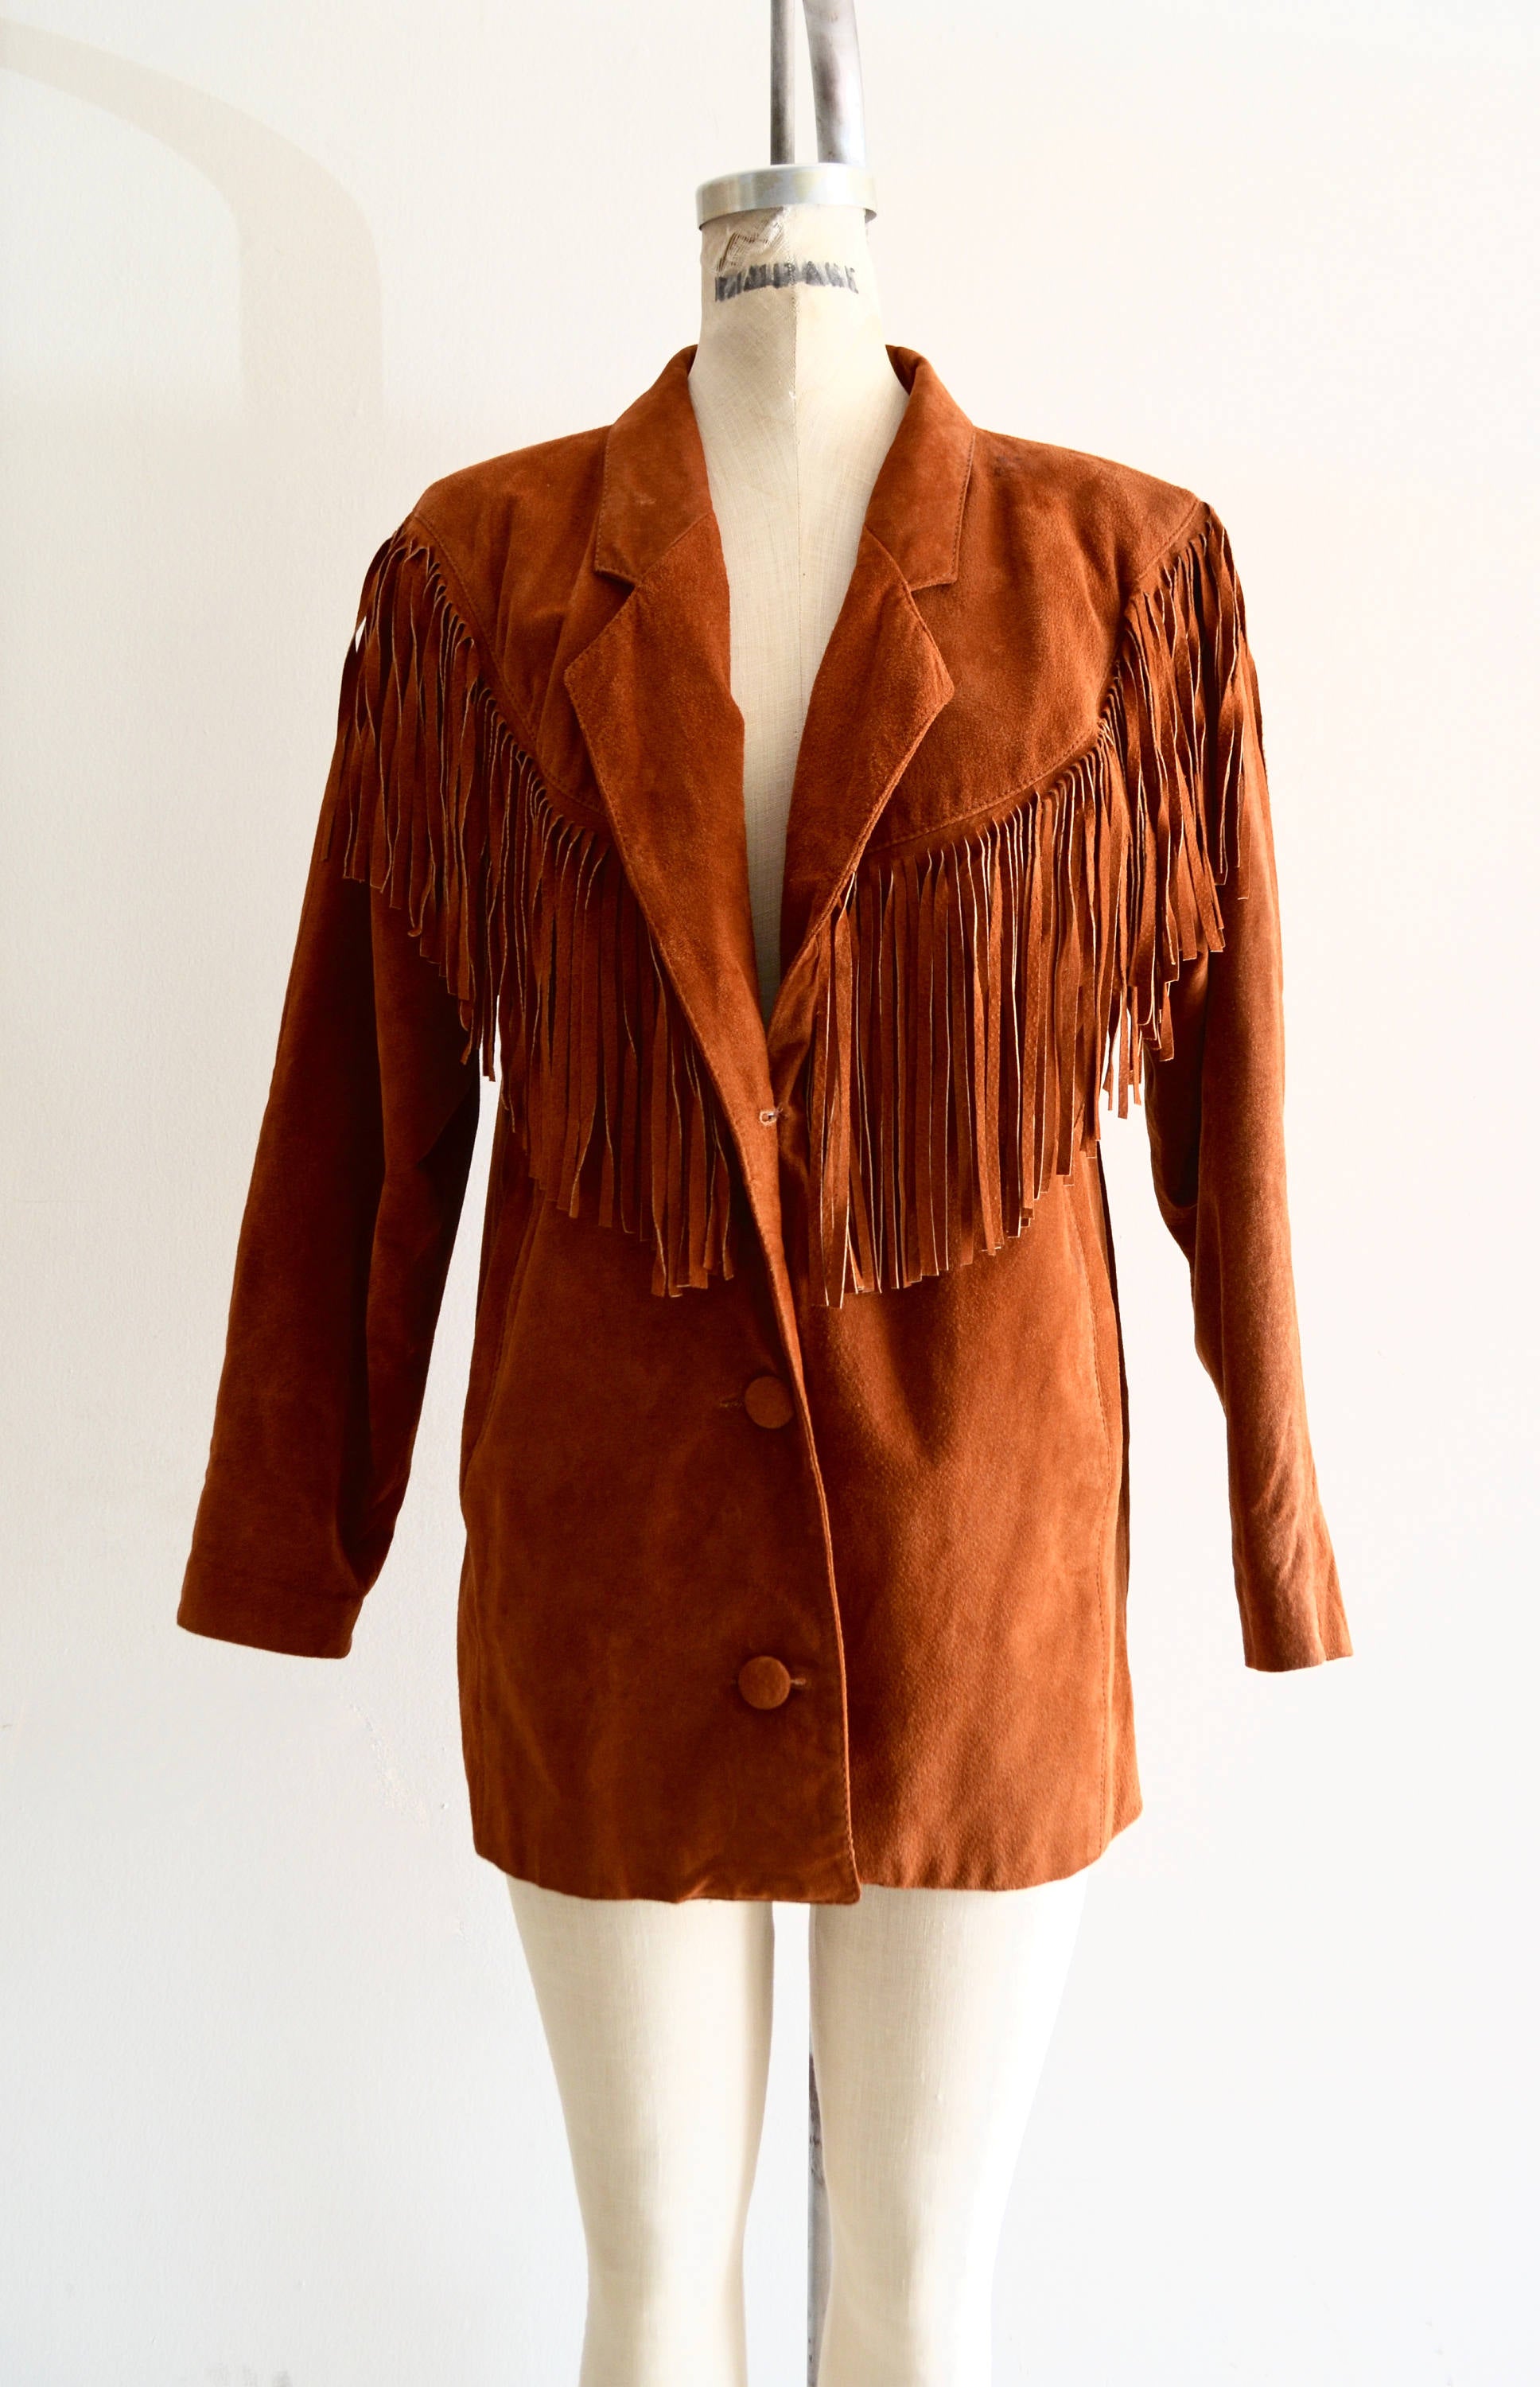 1970 Leather Fringe Golden Brown Cowboy Southwestern Rodeo Fringe Suede Jacket Blazer